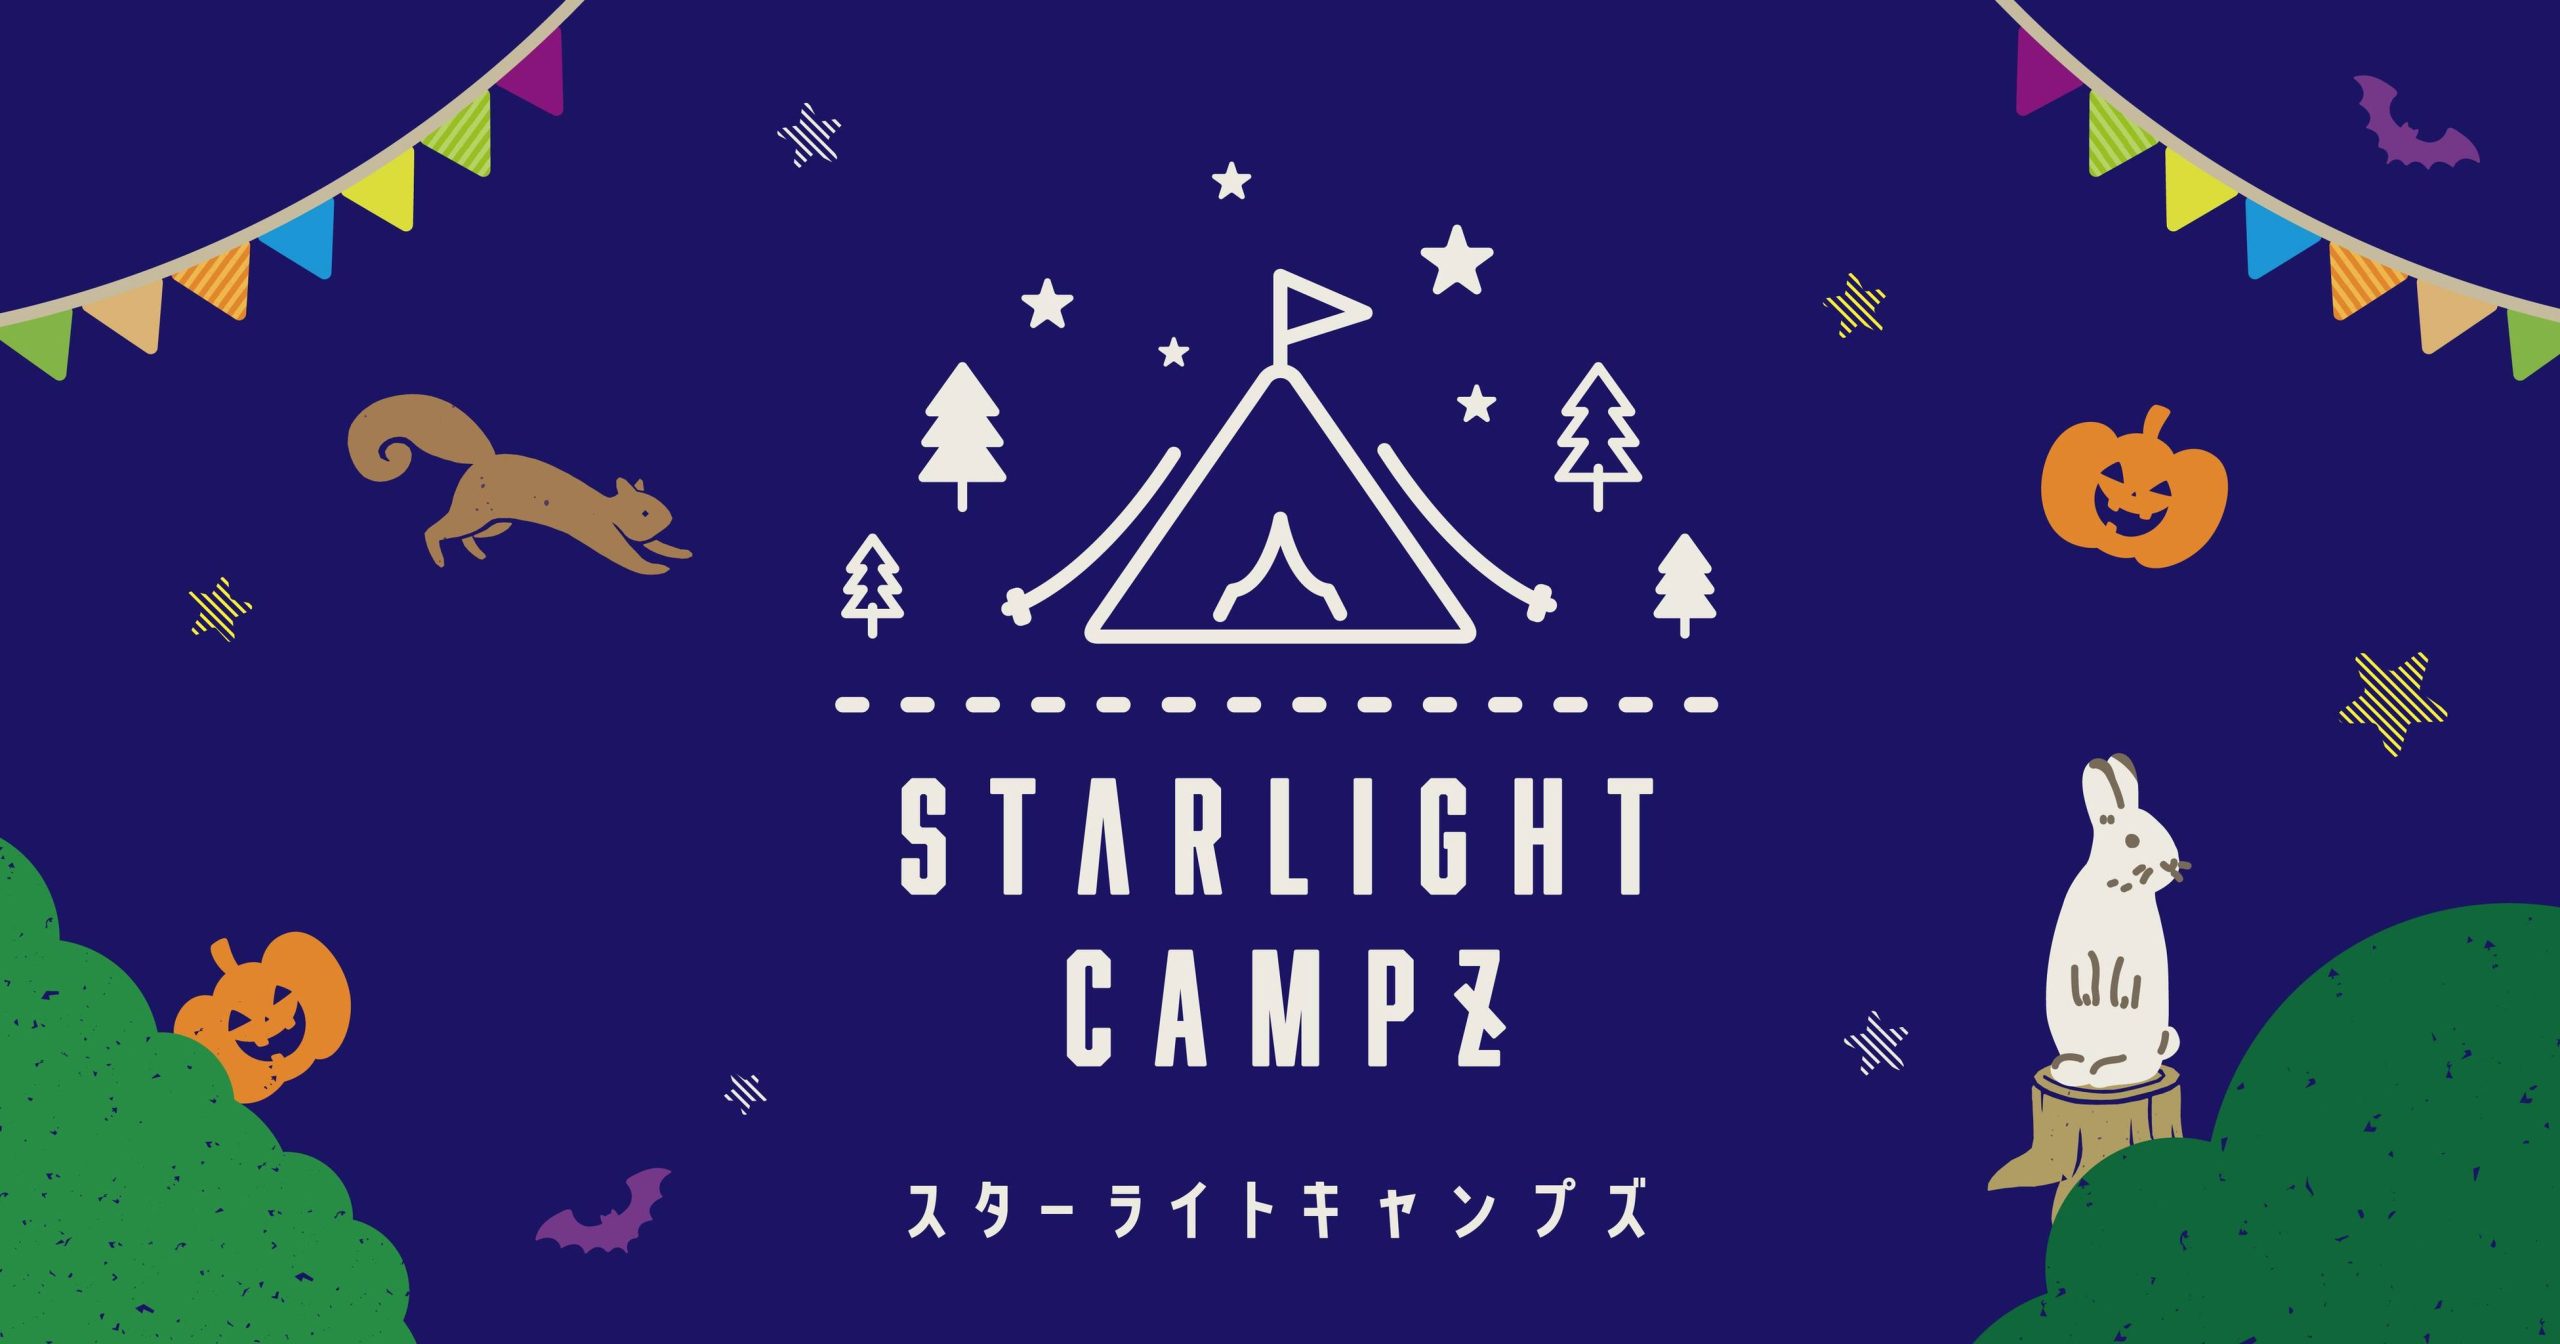 スターライトキャンプズ - 千葉市で非日常的なキャンプ体験を